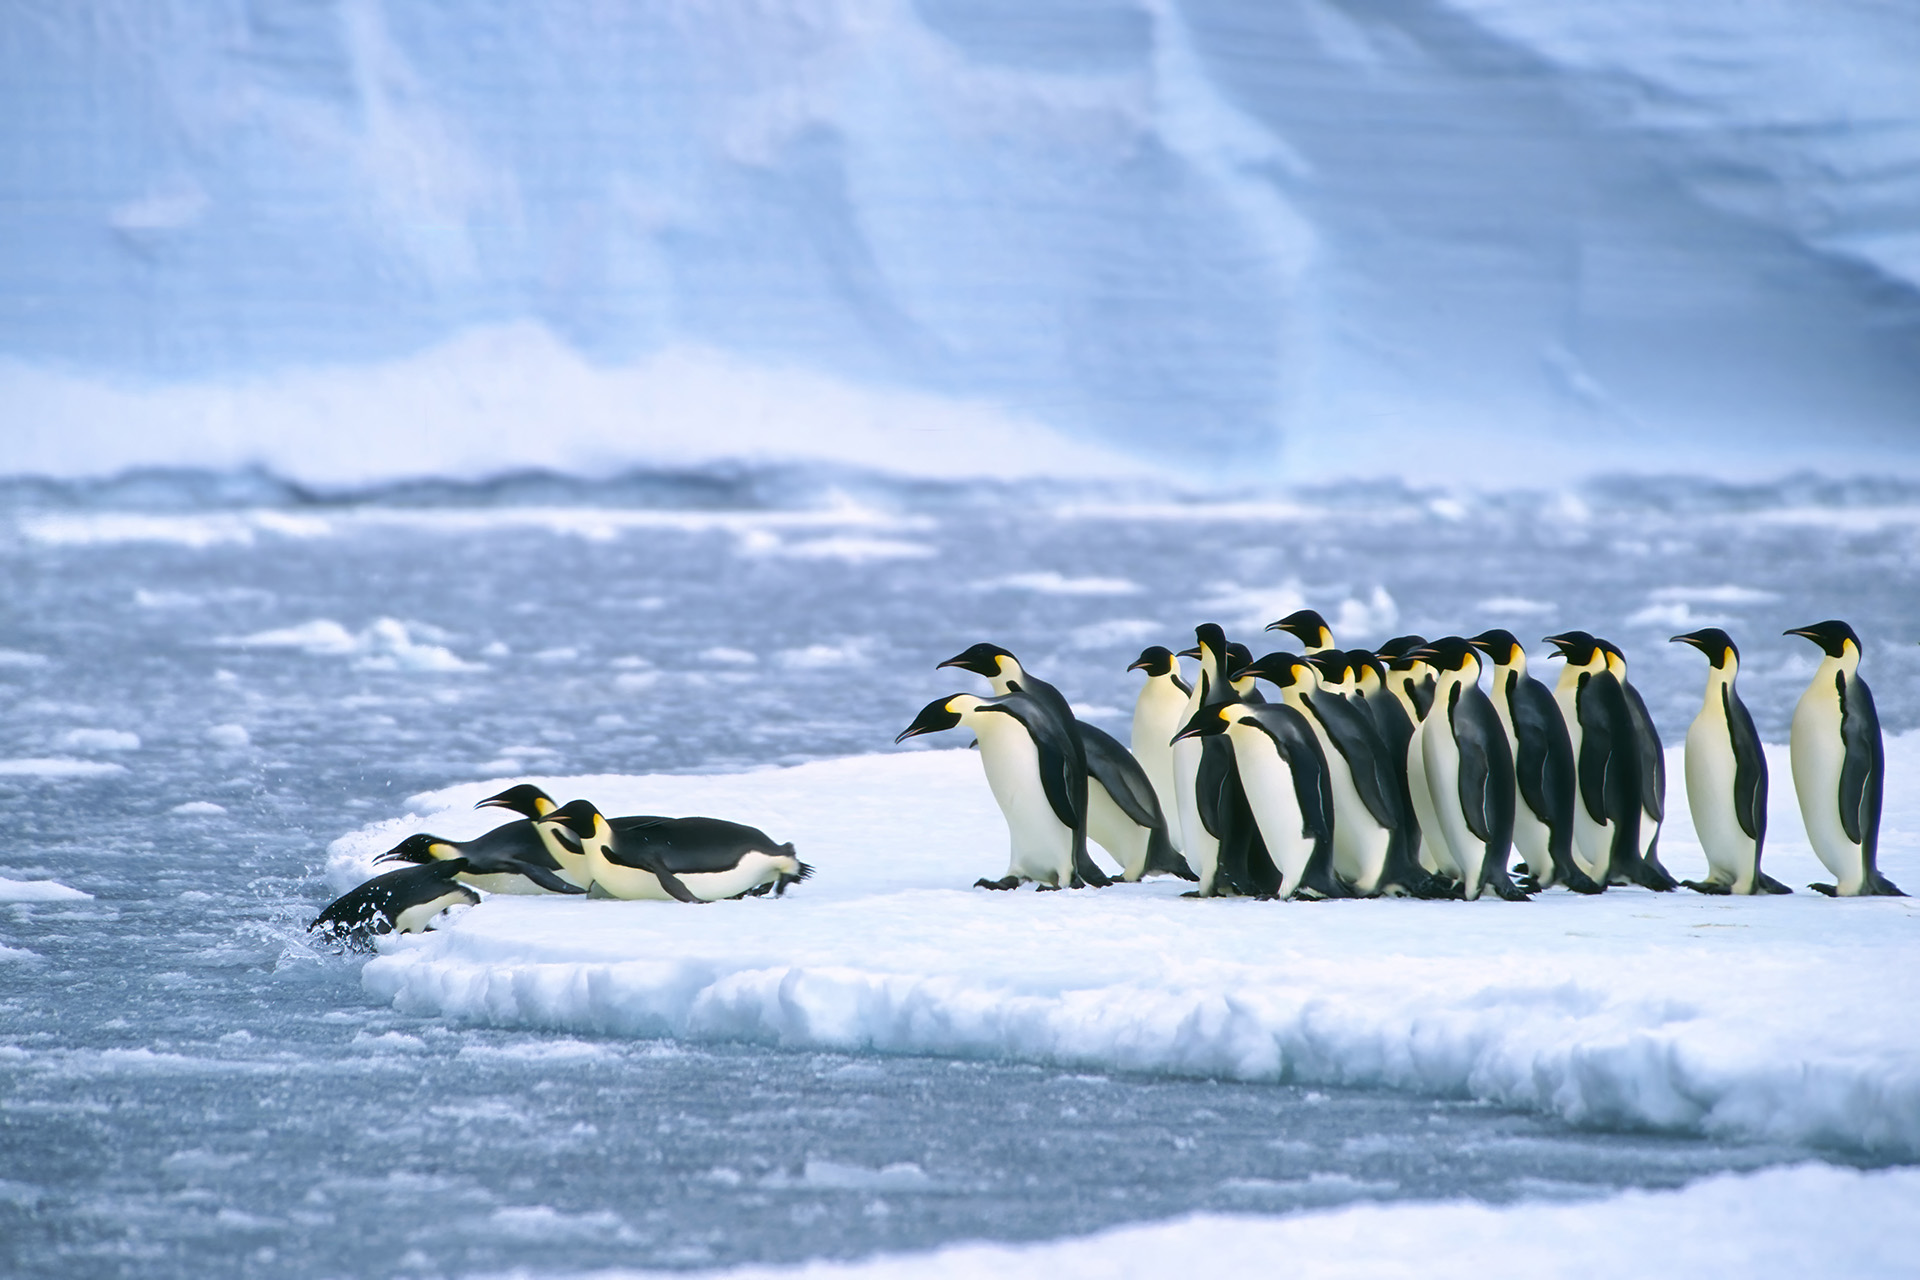 البطريق الإمبراطوري مهدد بالانقراض نهاية هذا القرن | علوم – البوكس نيوز